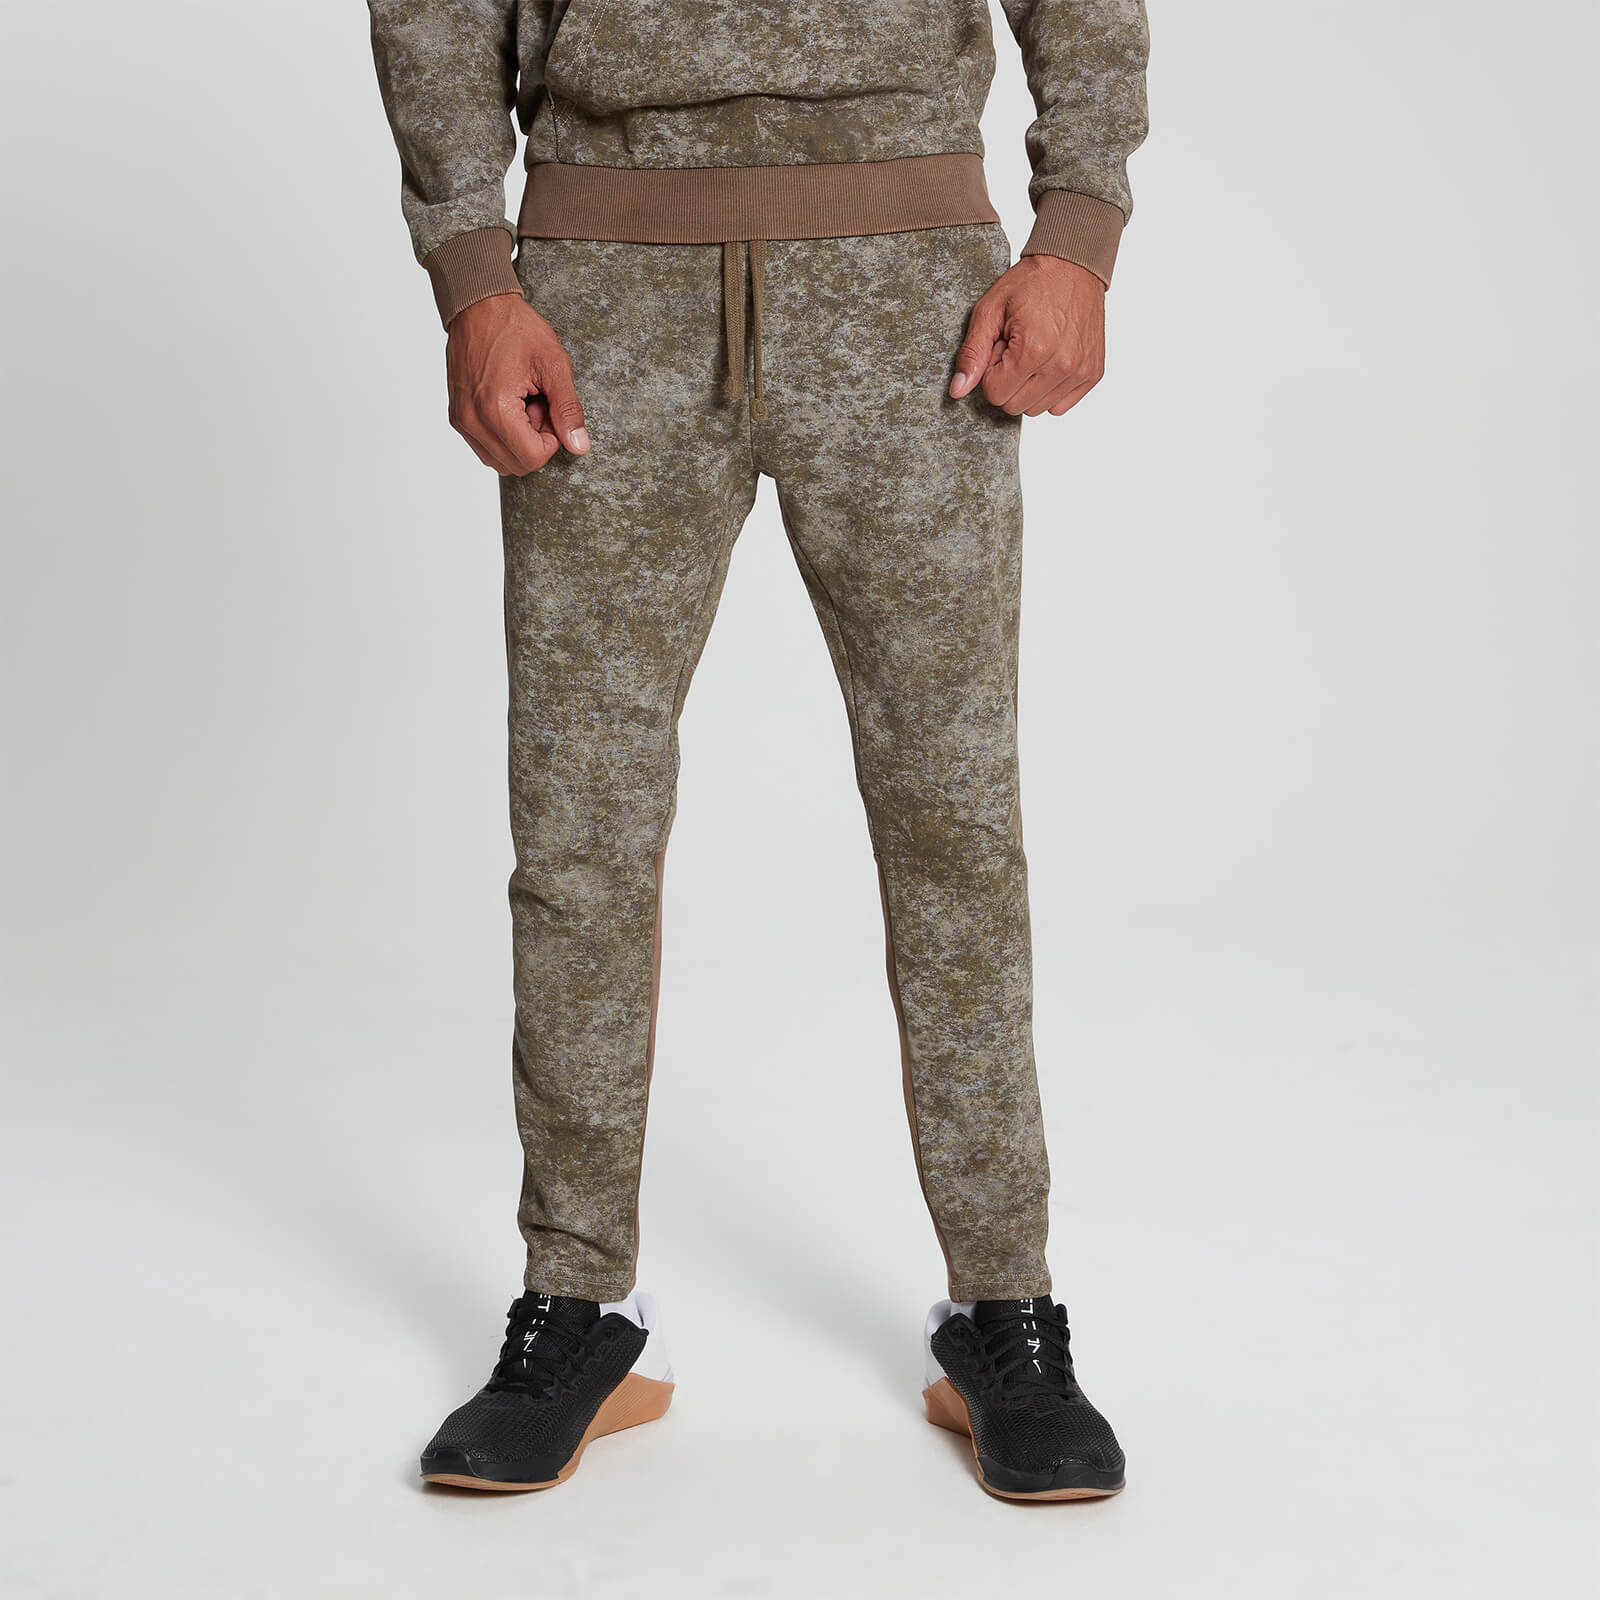 Męskie spodnie dresowe z kolekcji Raw Training MP – wzór kamuflażowy - XS